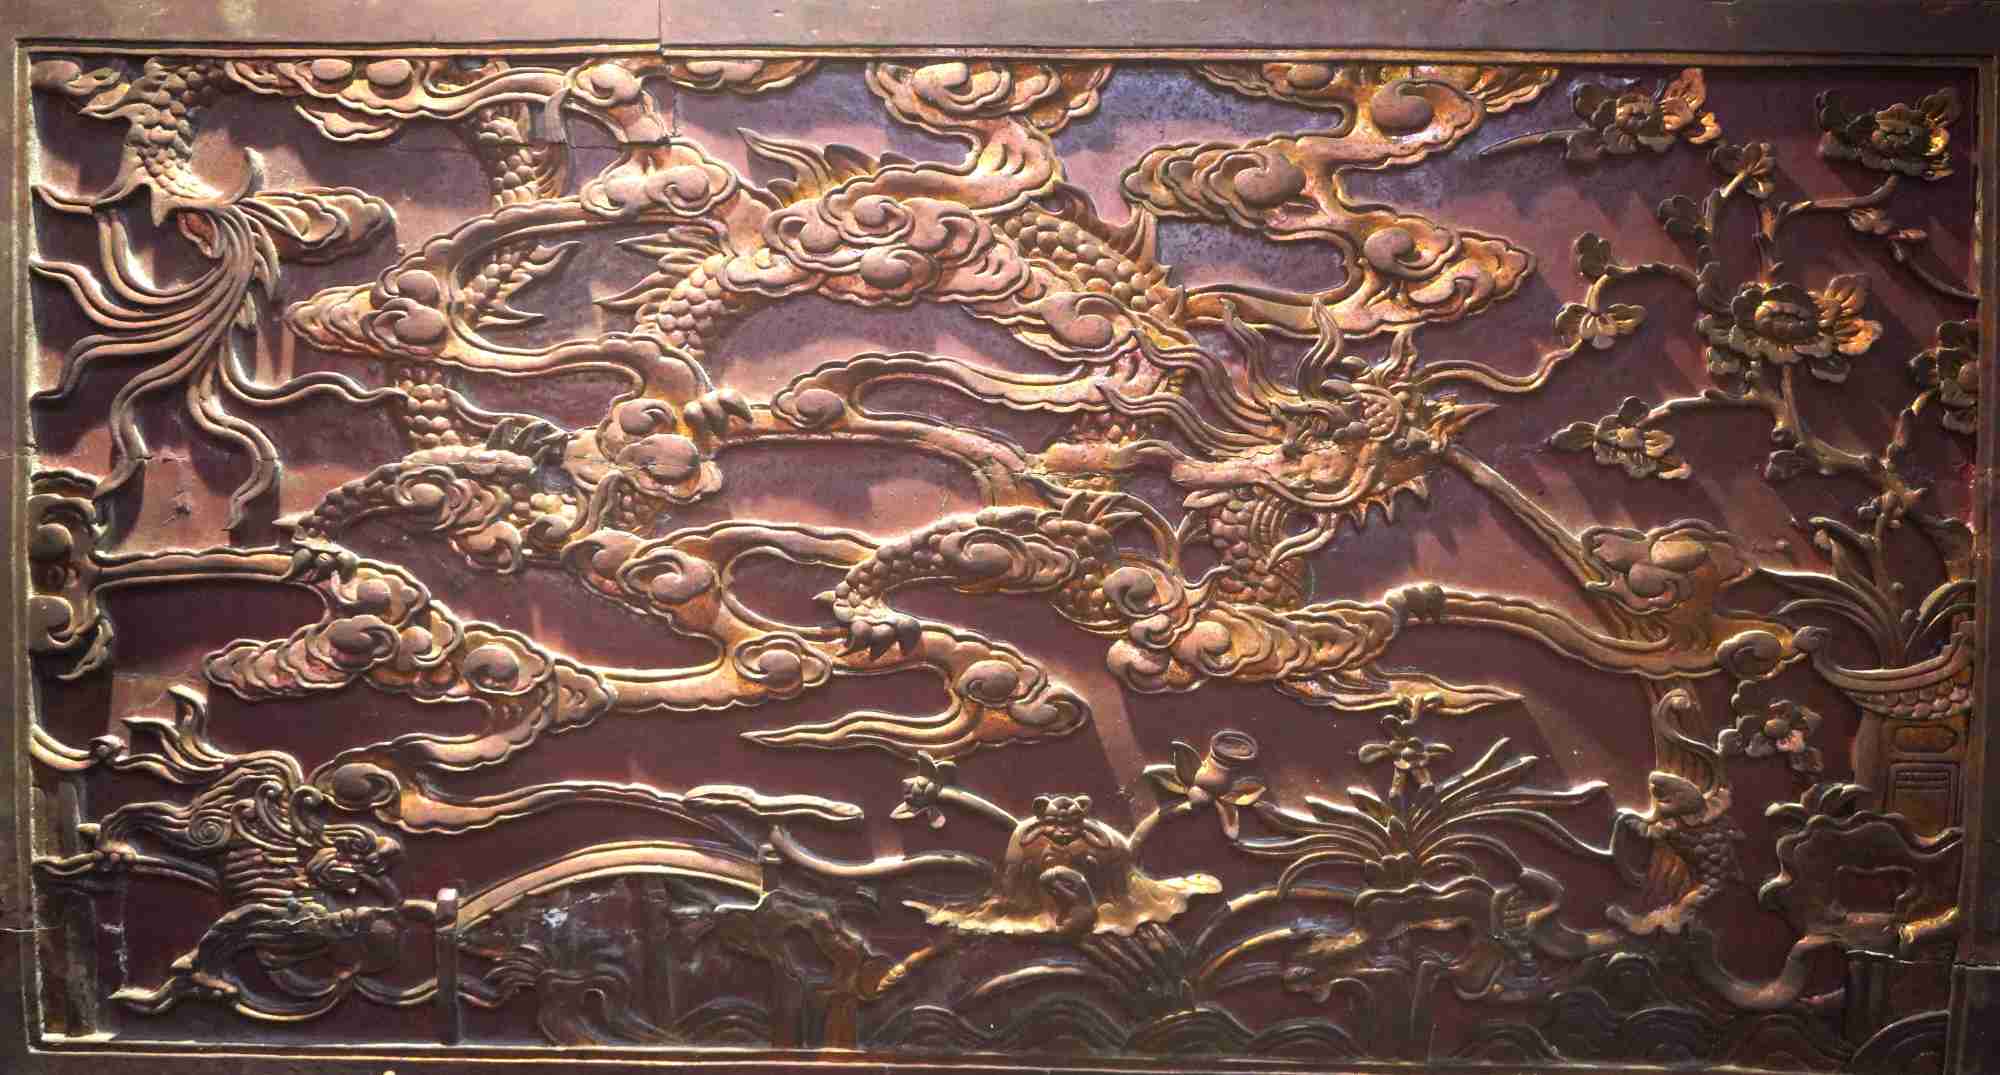 Nhiều mảng chạm khắc hình rồng trên gỗ trong ngôi chùa cổ Trung Hành. 